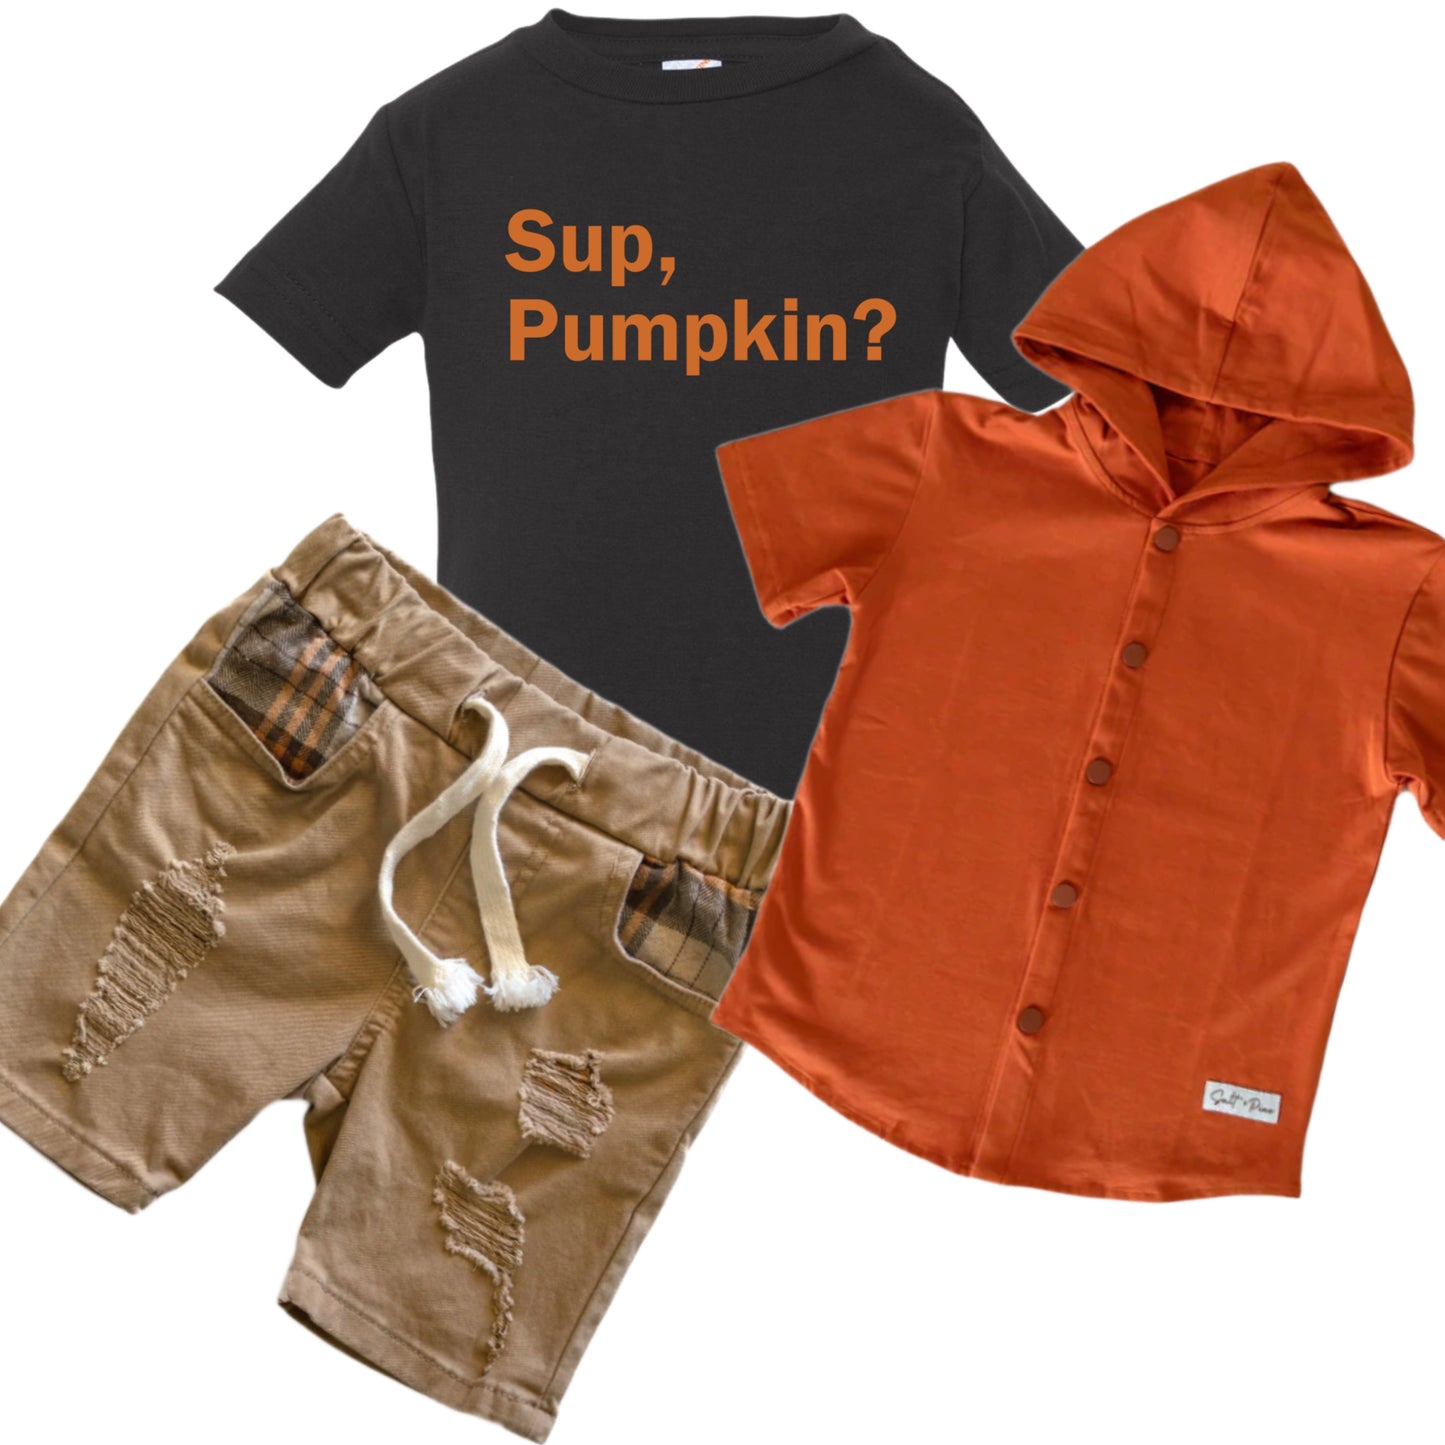 Sup pumpkin( black shirt only)